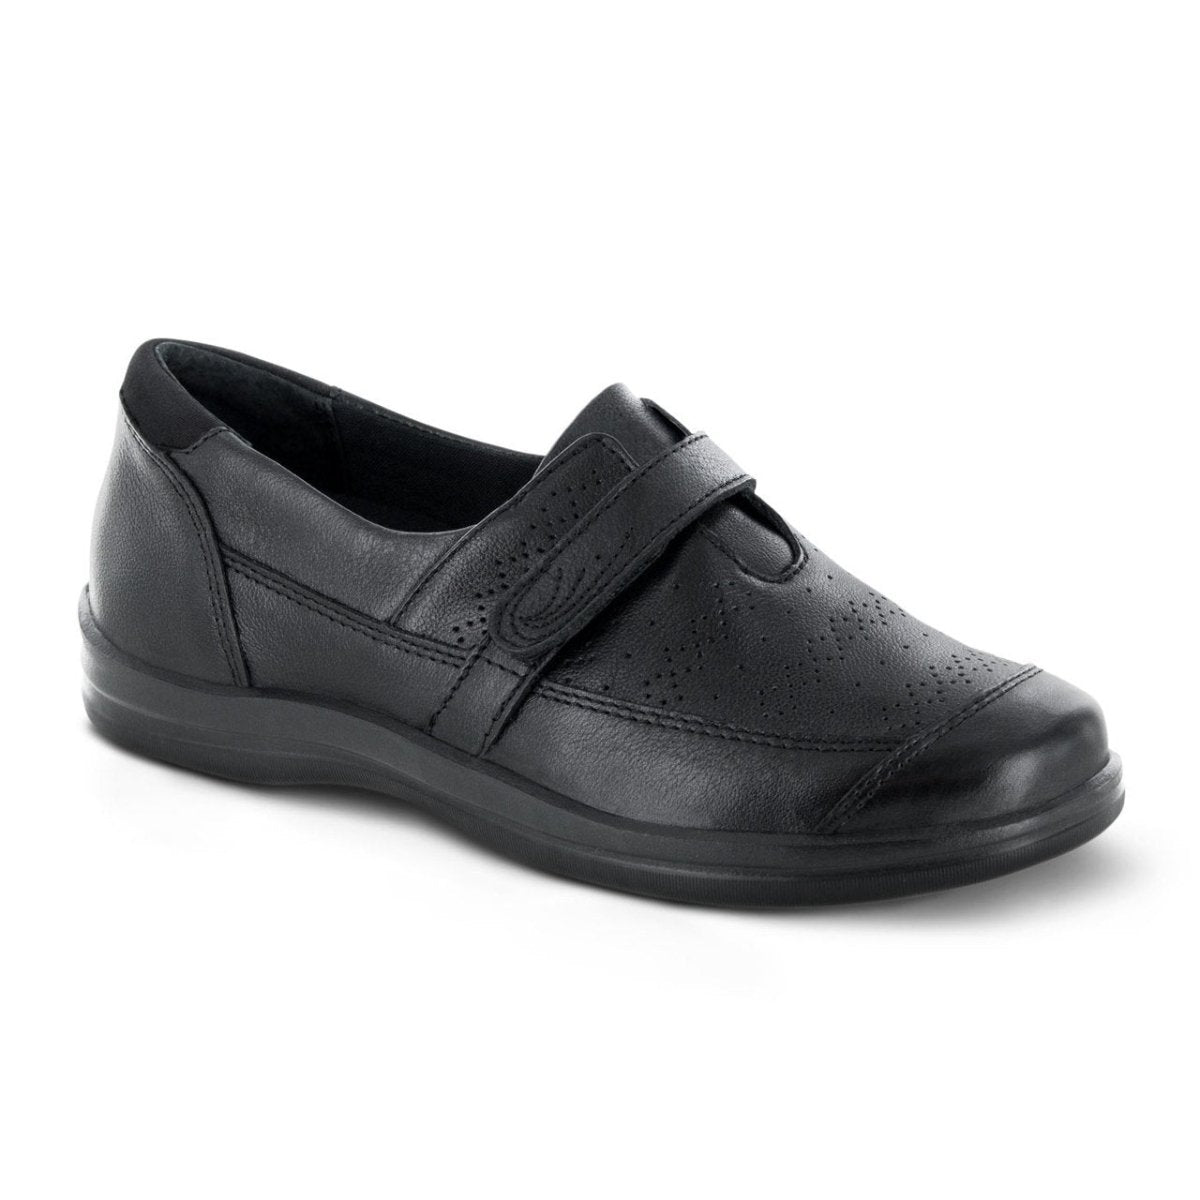 APEX REGINA SLIP ON WOMEN'S DRESS SHOE IN BLACK - TLW Shoes